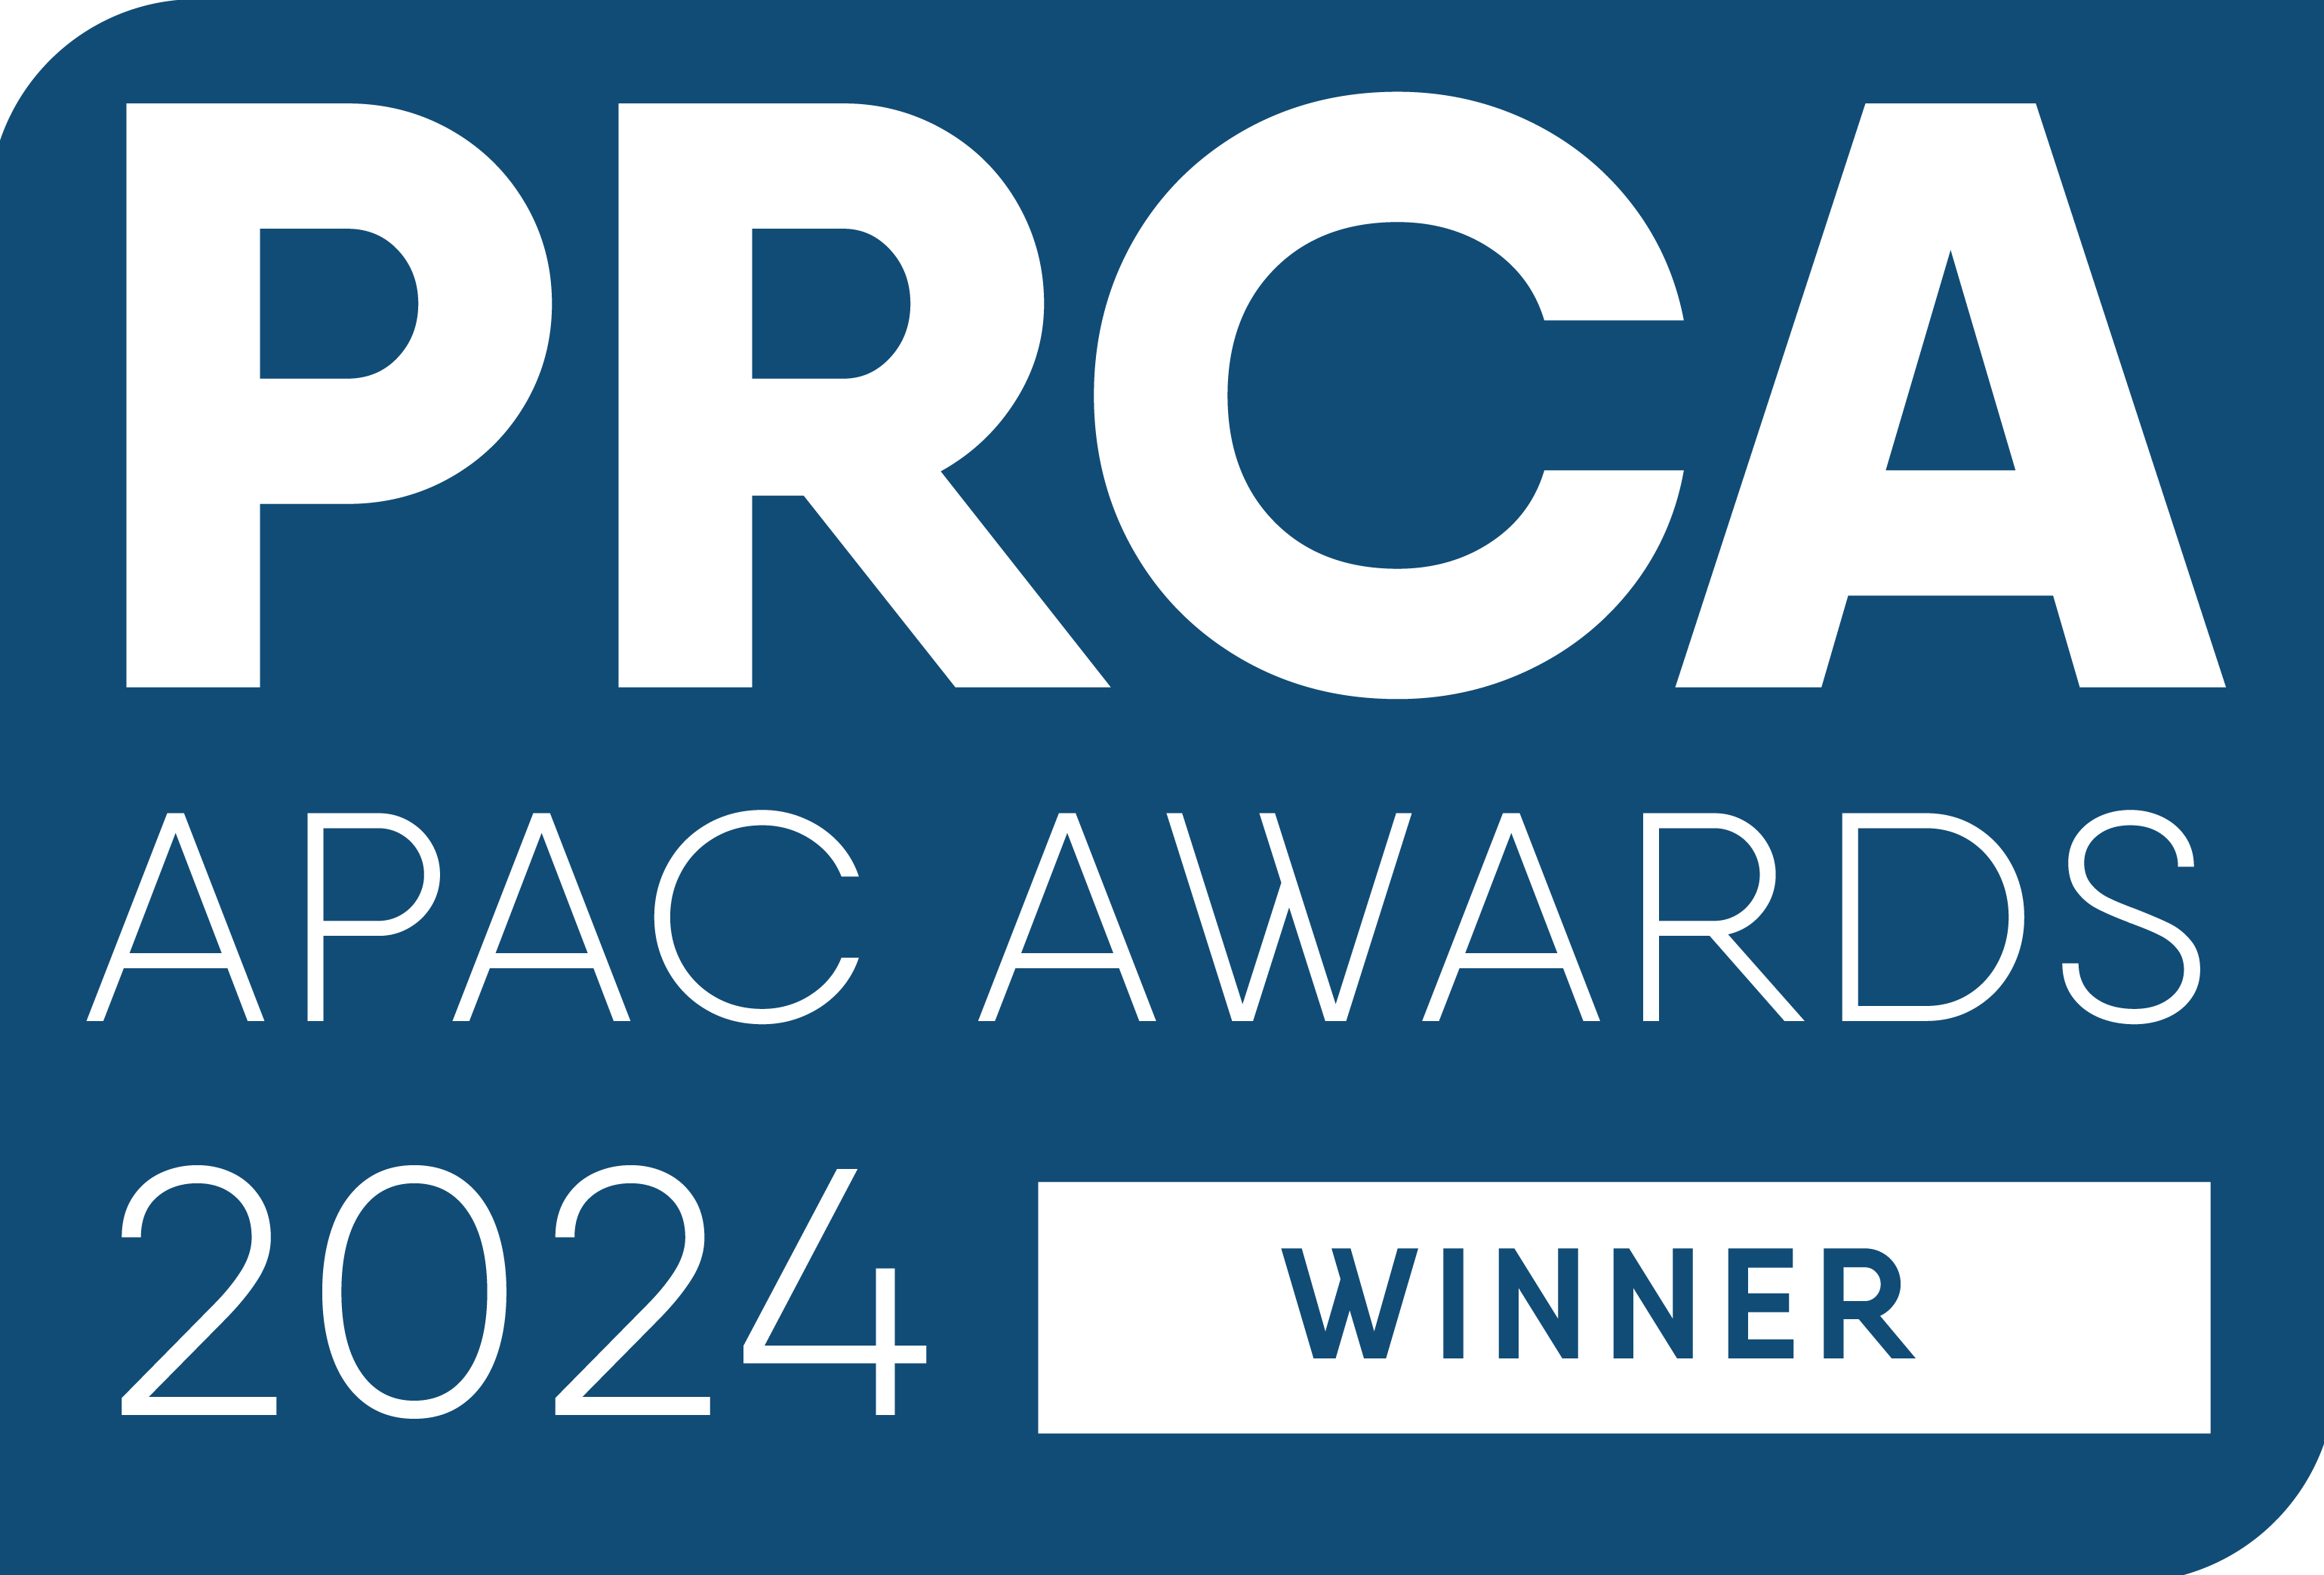 PRCA Award Winner 2024